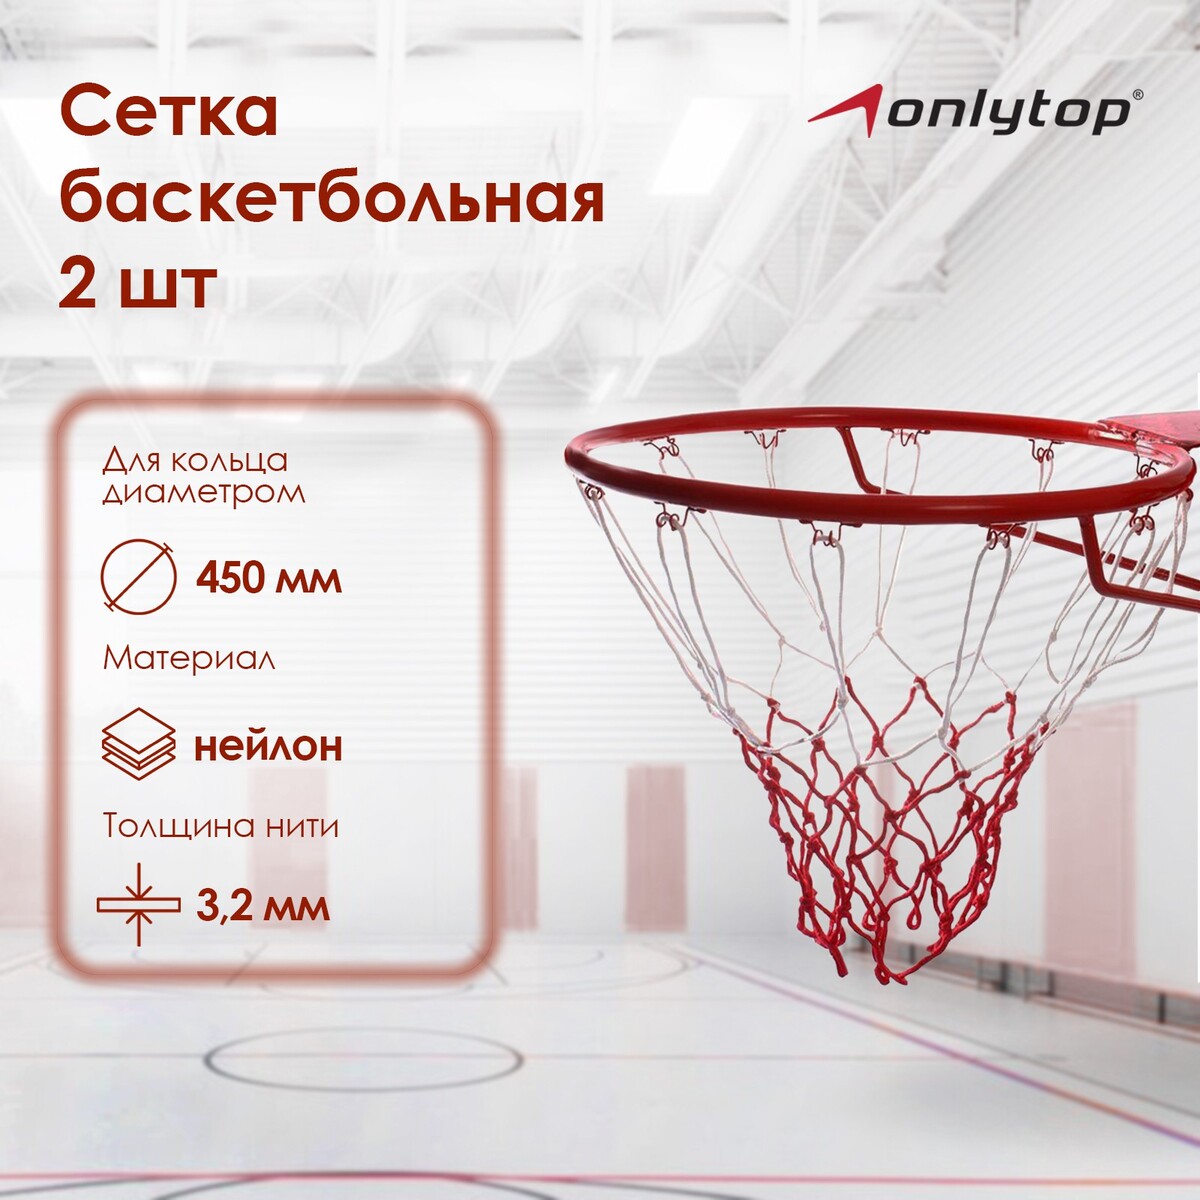 Сетка баскетбольная onlytop, 50 см, нить 3,2 мм, 2 шт. сетка волейбольная onlytop с тросом нить 2 мм 9 5х1 м